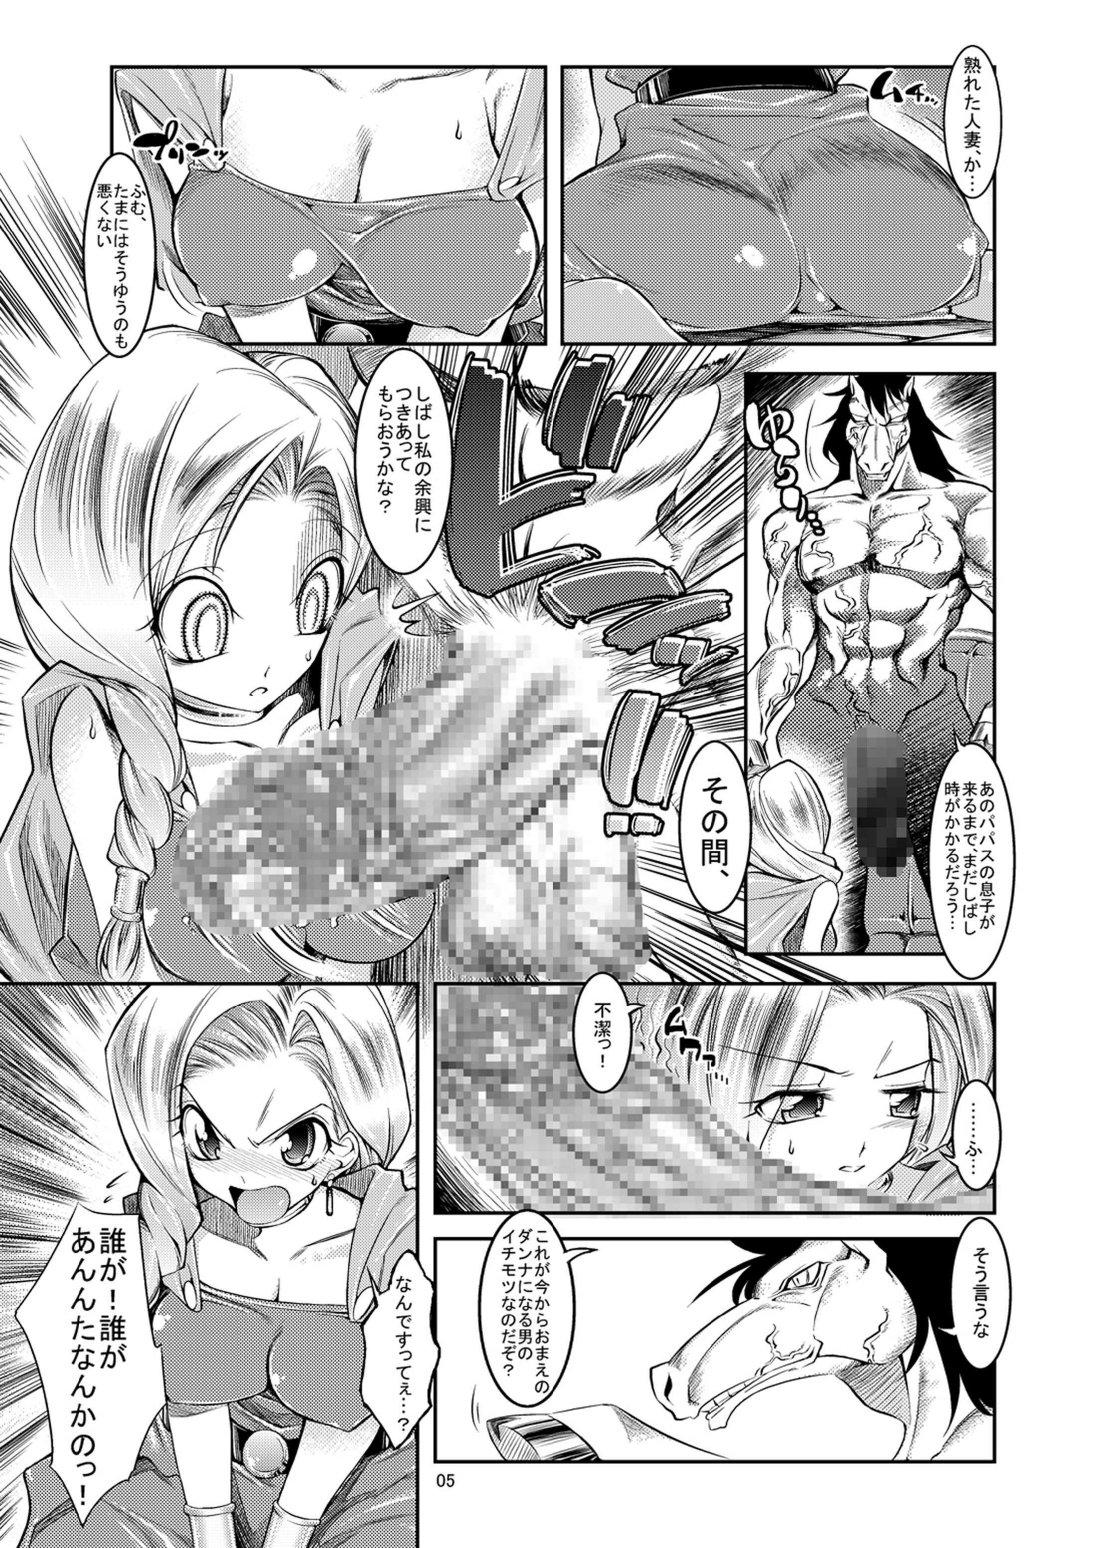 Nalgona Medapani Quest Bianca-hen - Dragon quest v Pendeja - Page 5